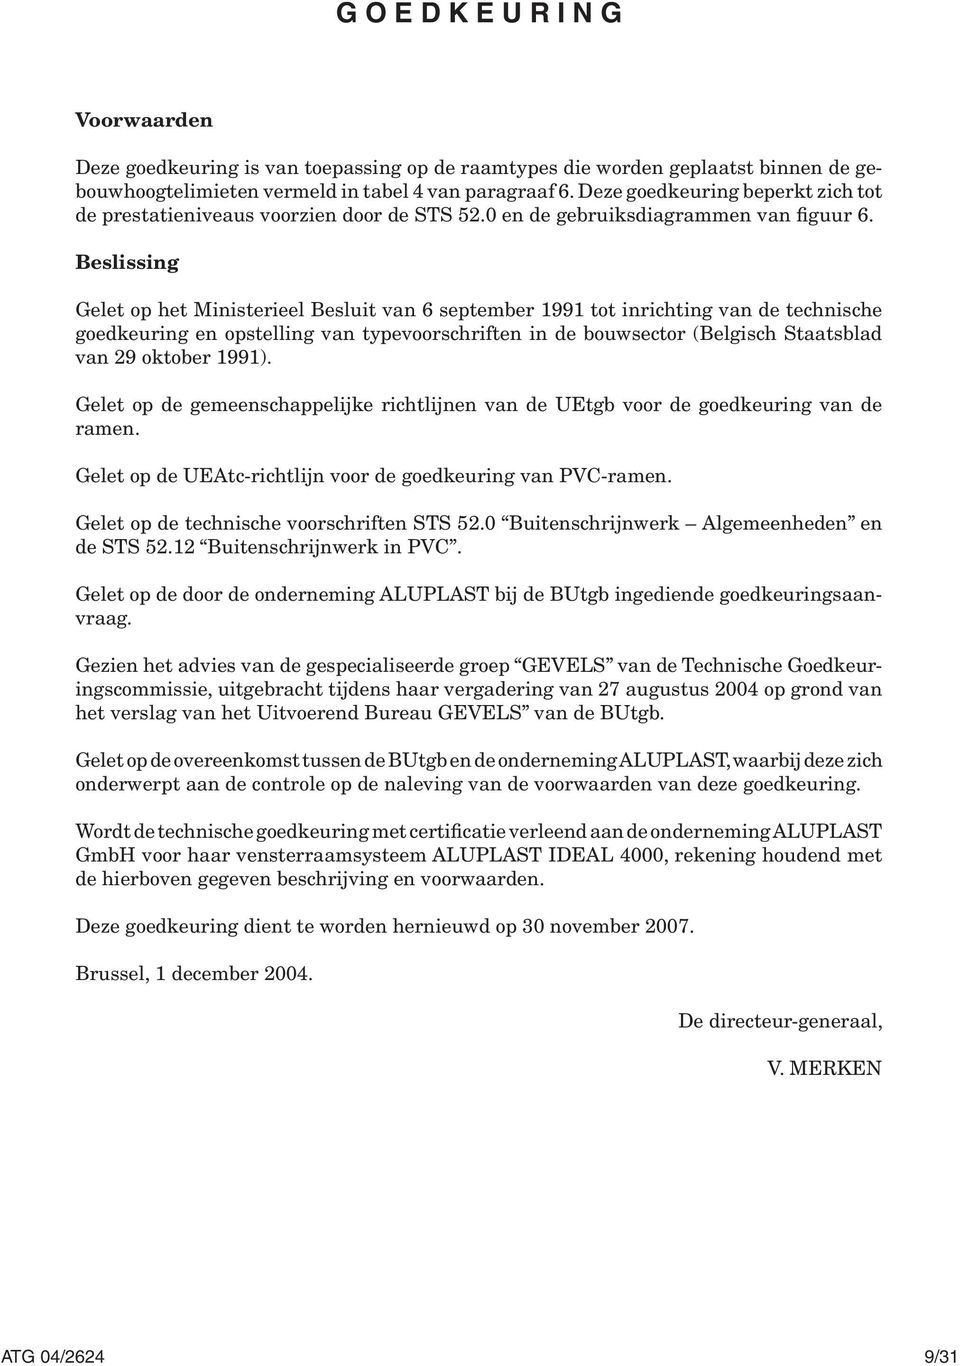 Beslissing Gelet op het Ministerieel Besluit van 6 september 1991 tot inrichting van de technische goedkeuring en opstelling van typevoorschriften in de bouwsector (Belgisch Staatsblad van 29 oktober